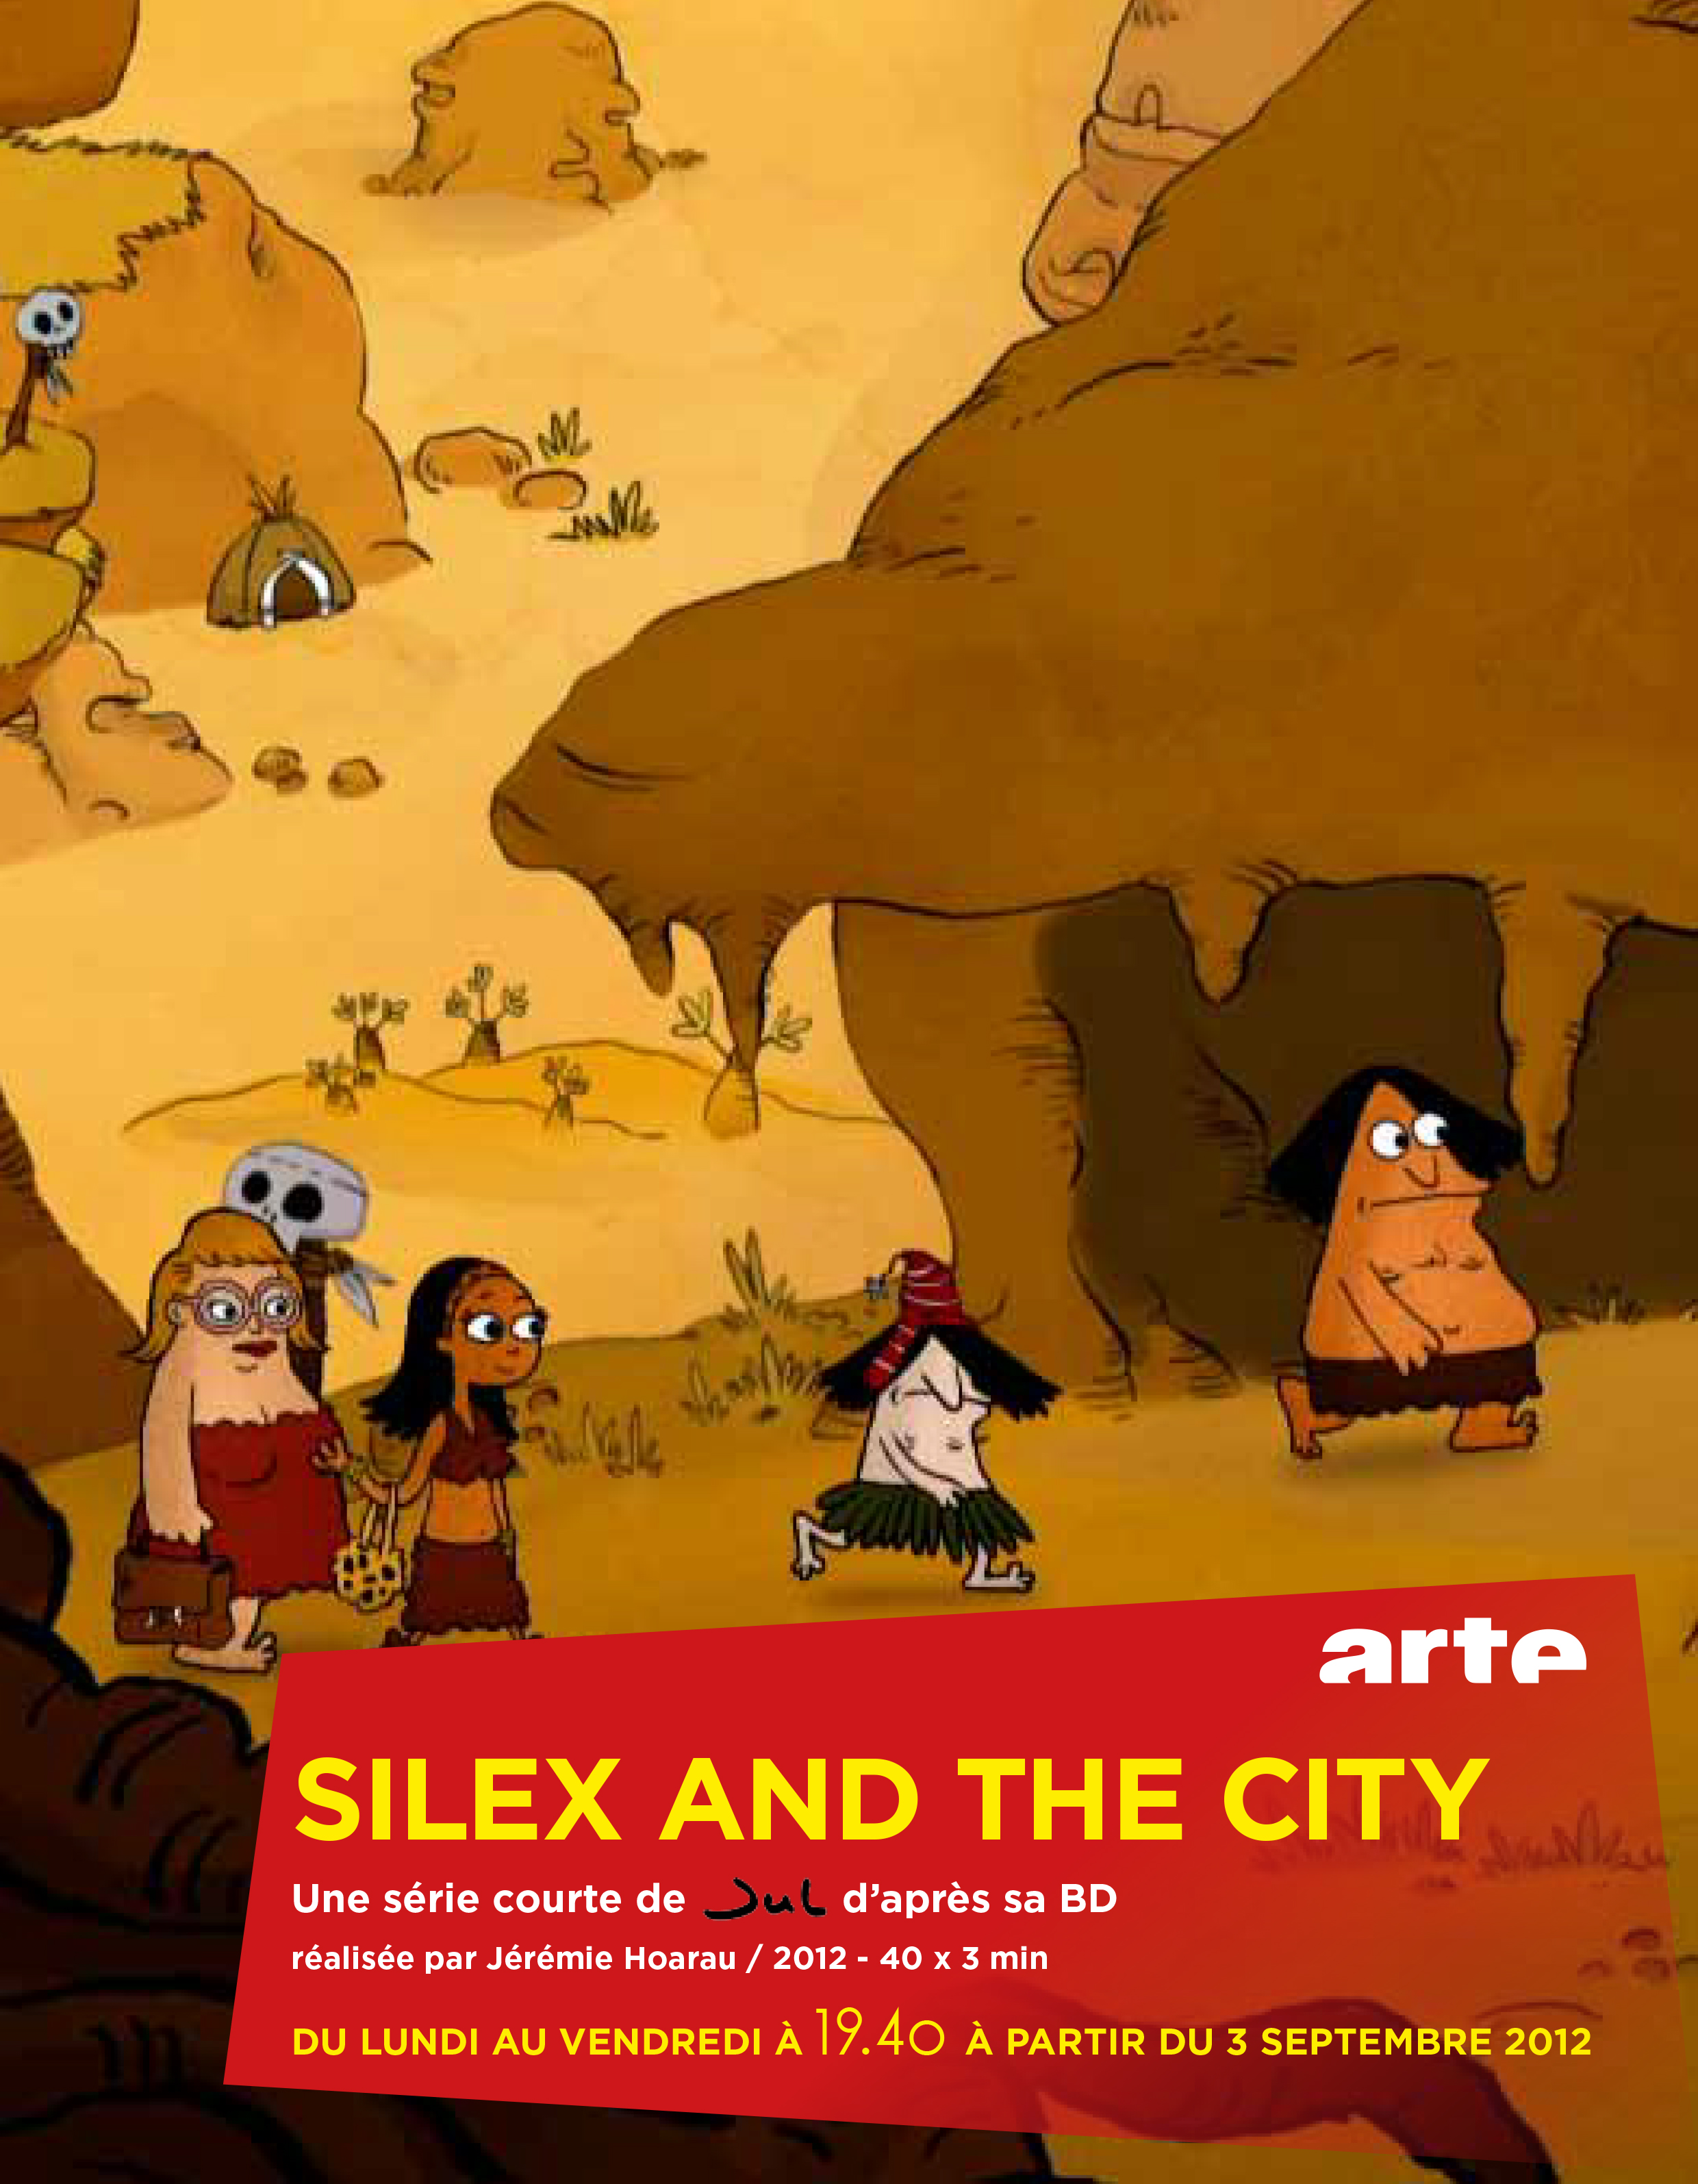 L'adaptation de "Silex and the City" diffusée dès ce lundi sur ARTE